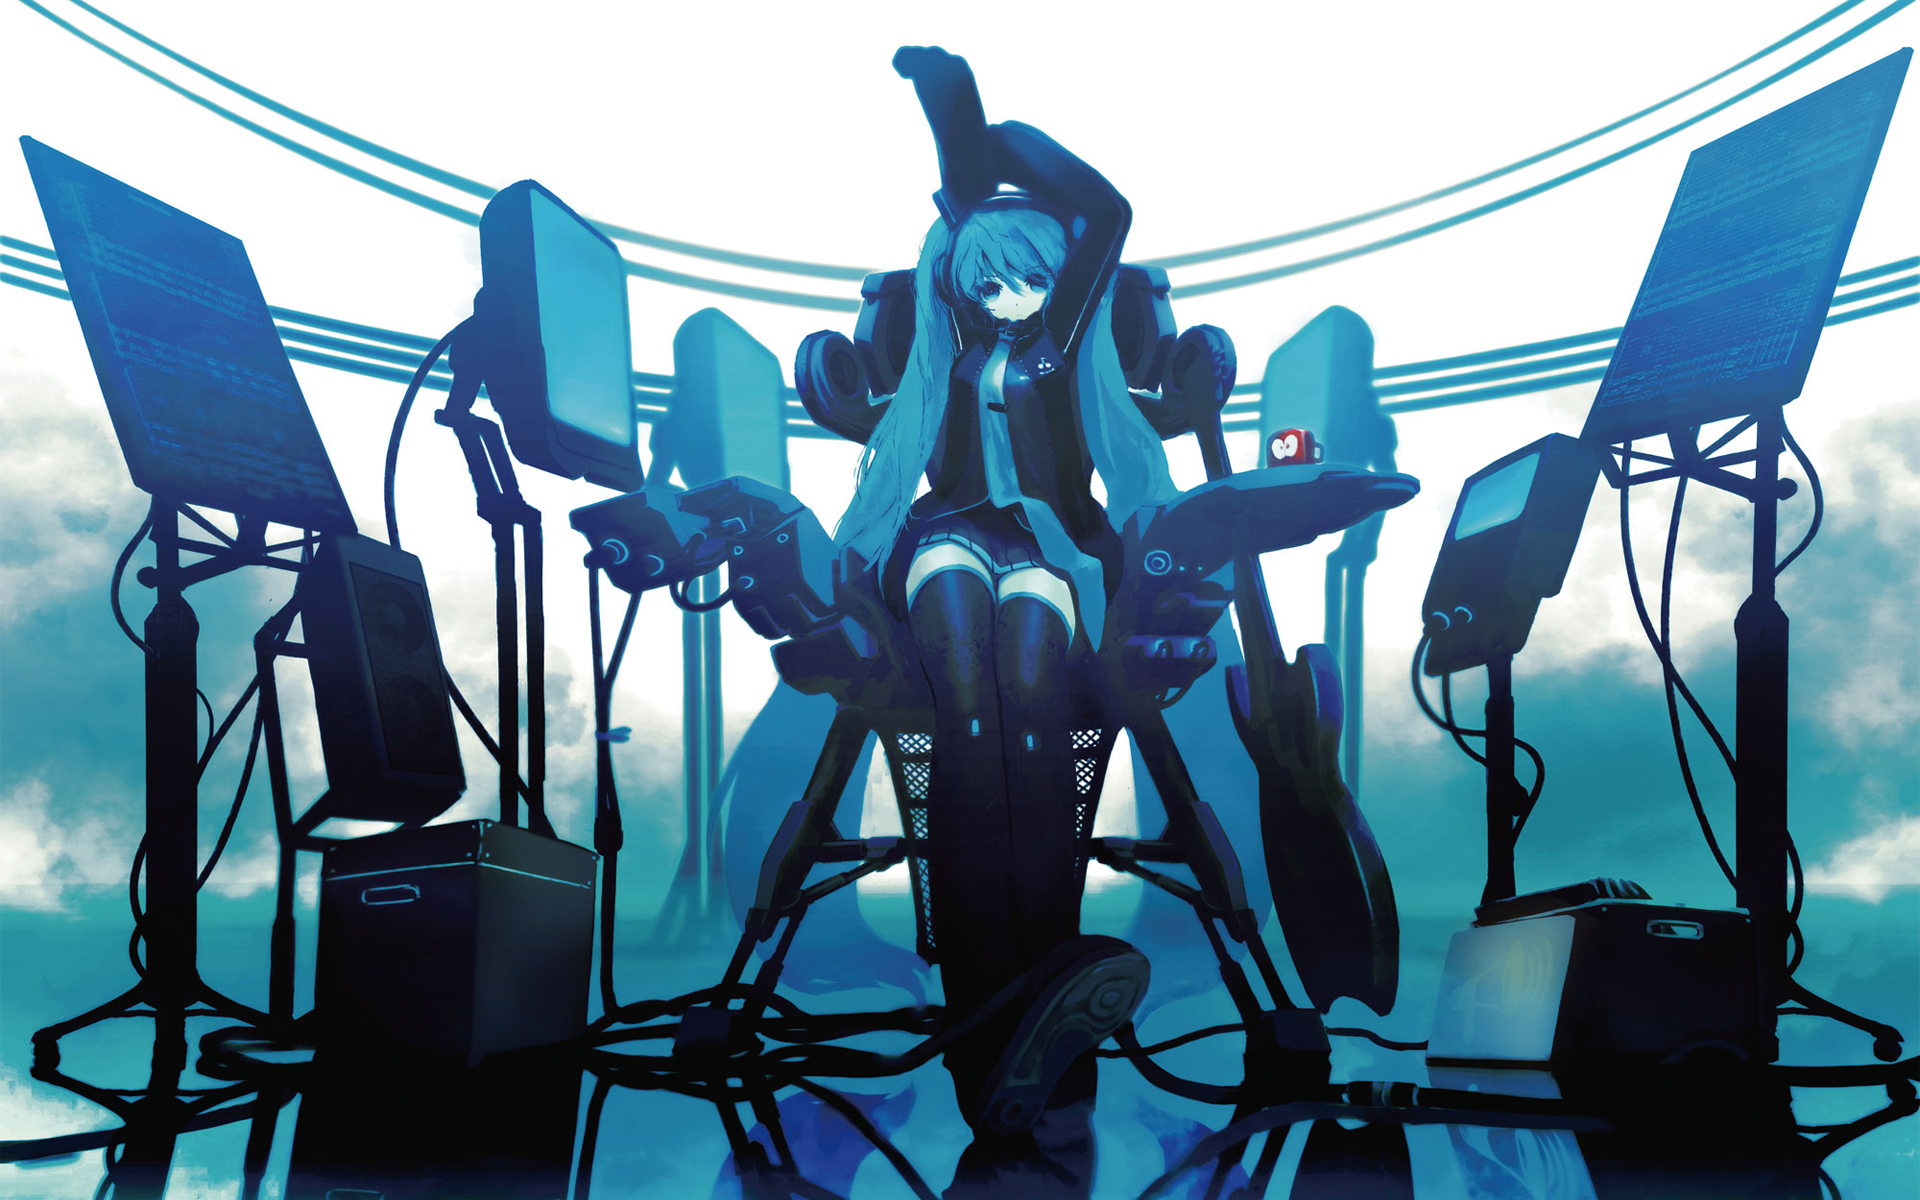 Descarga gratuita de fondo de pantalla para móvil de Vocaloid, Hatsune Miku, Animado.